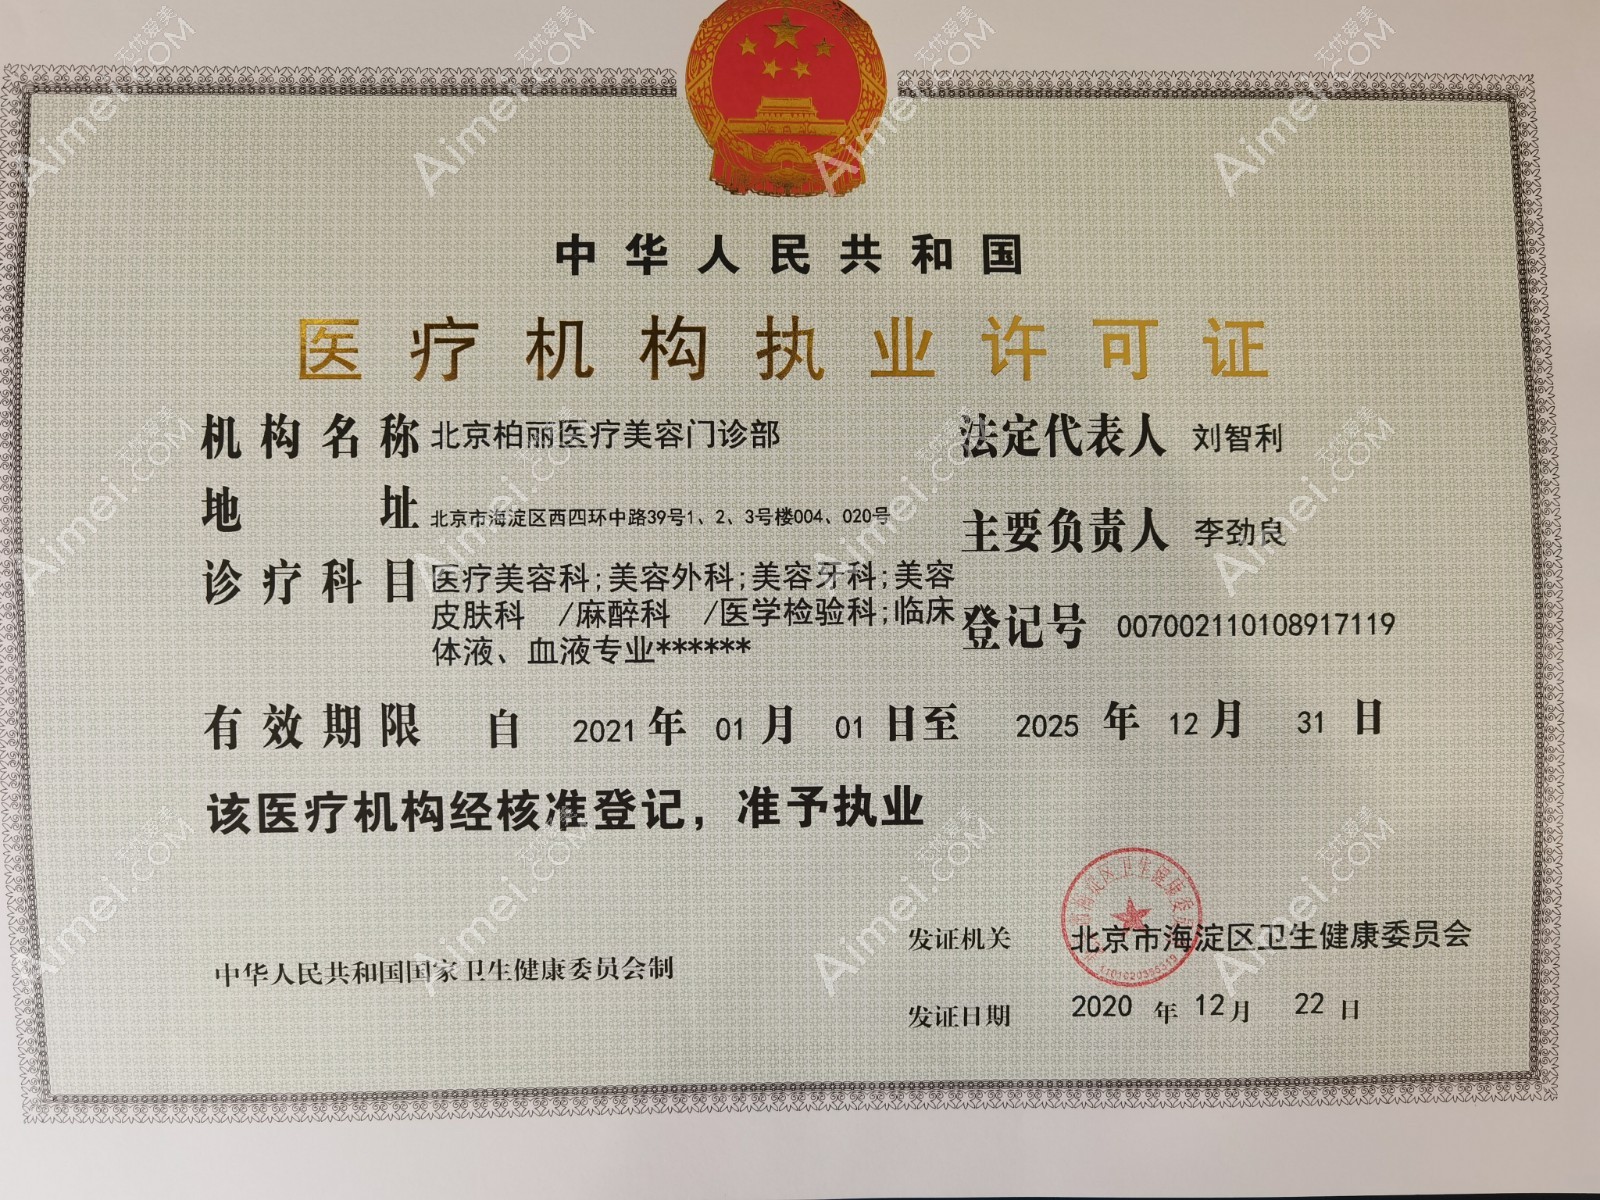 北京柏丽医疗美容门诊部医疗机构执业许可证